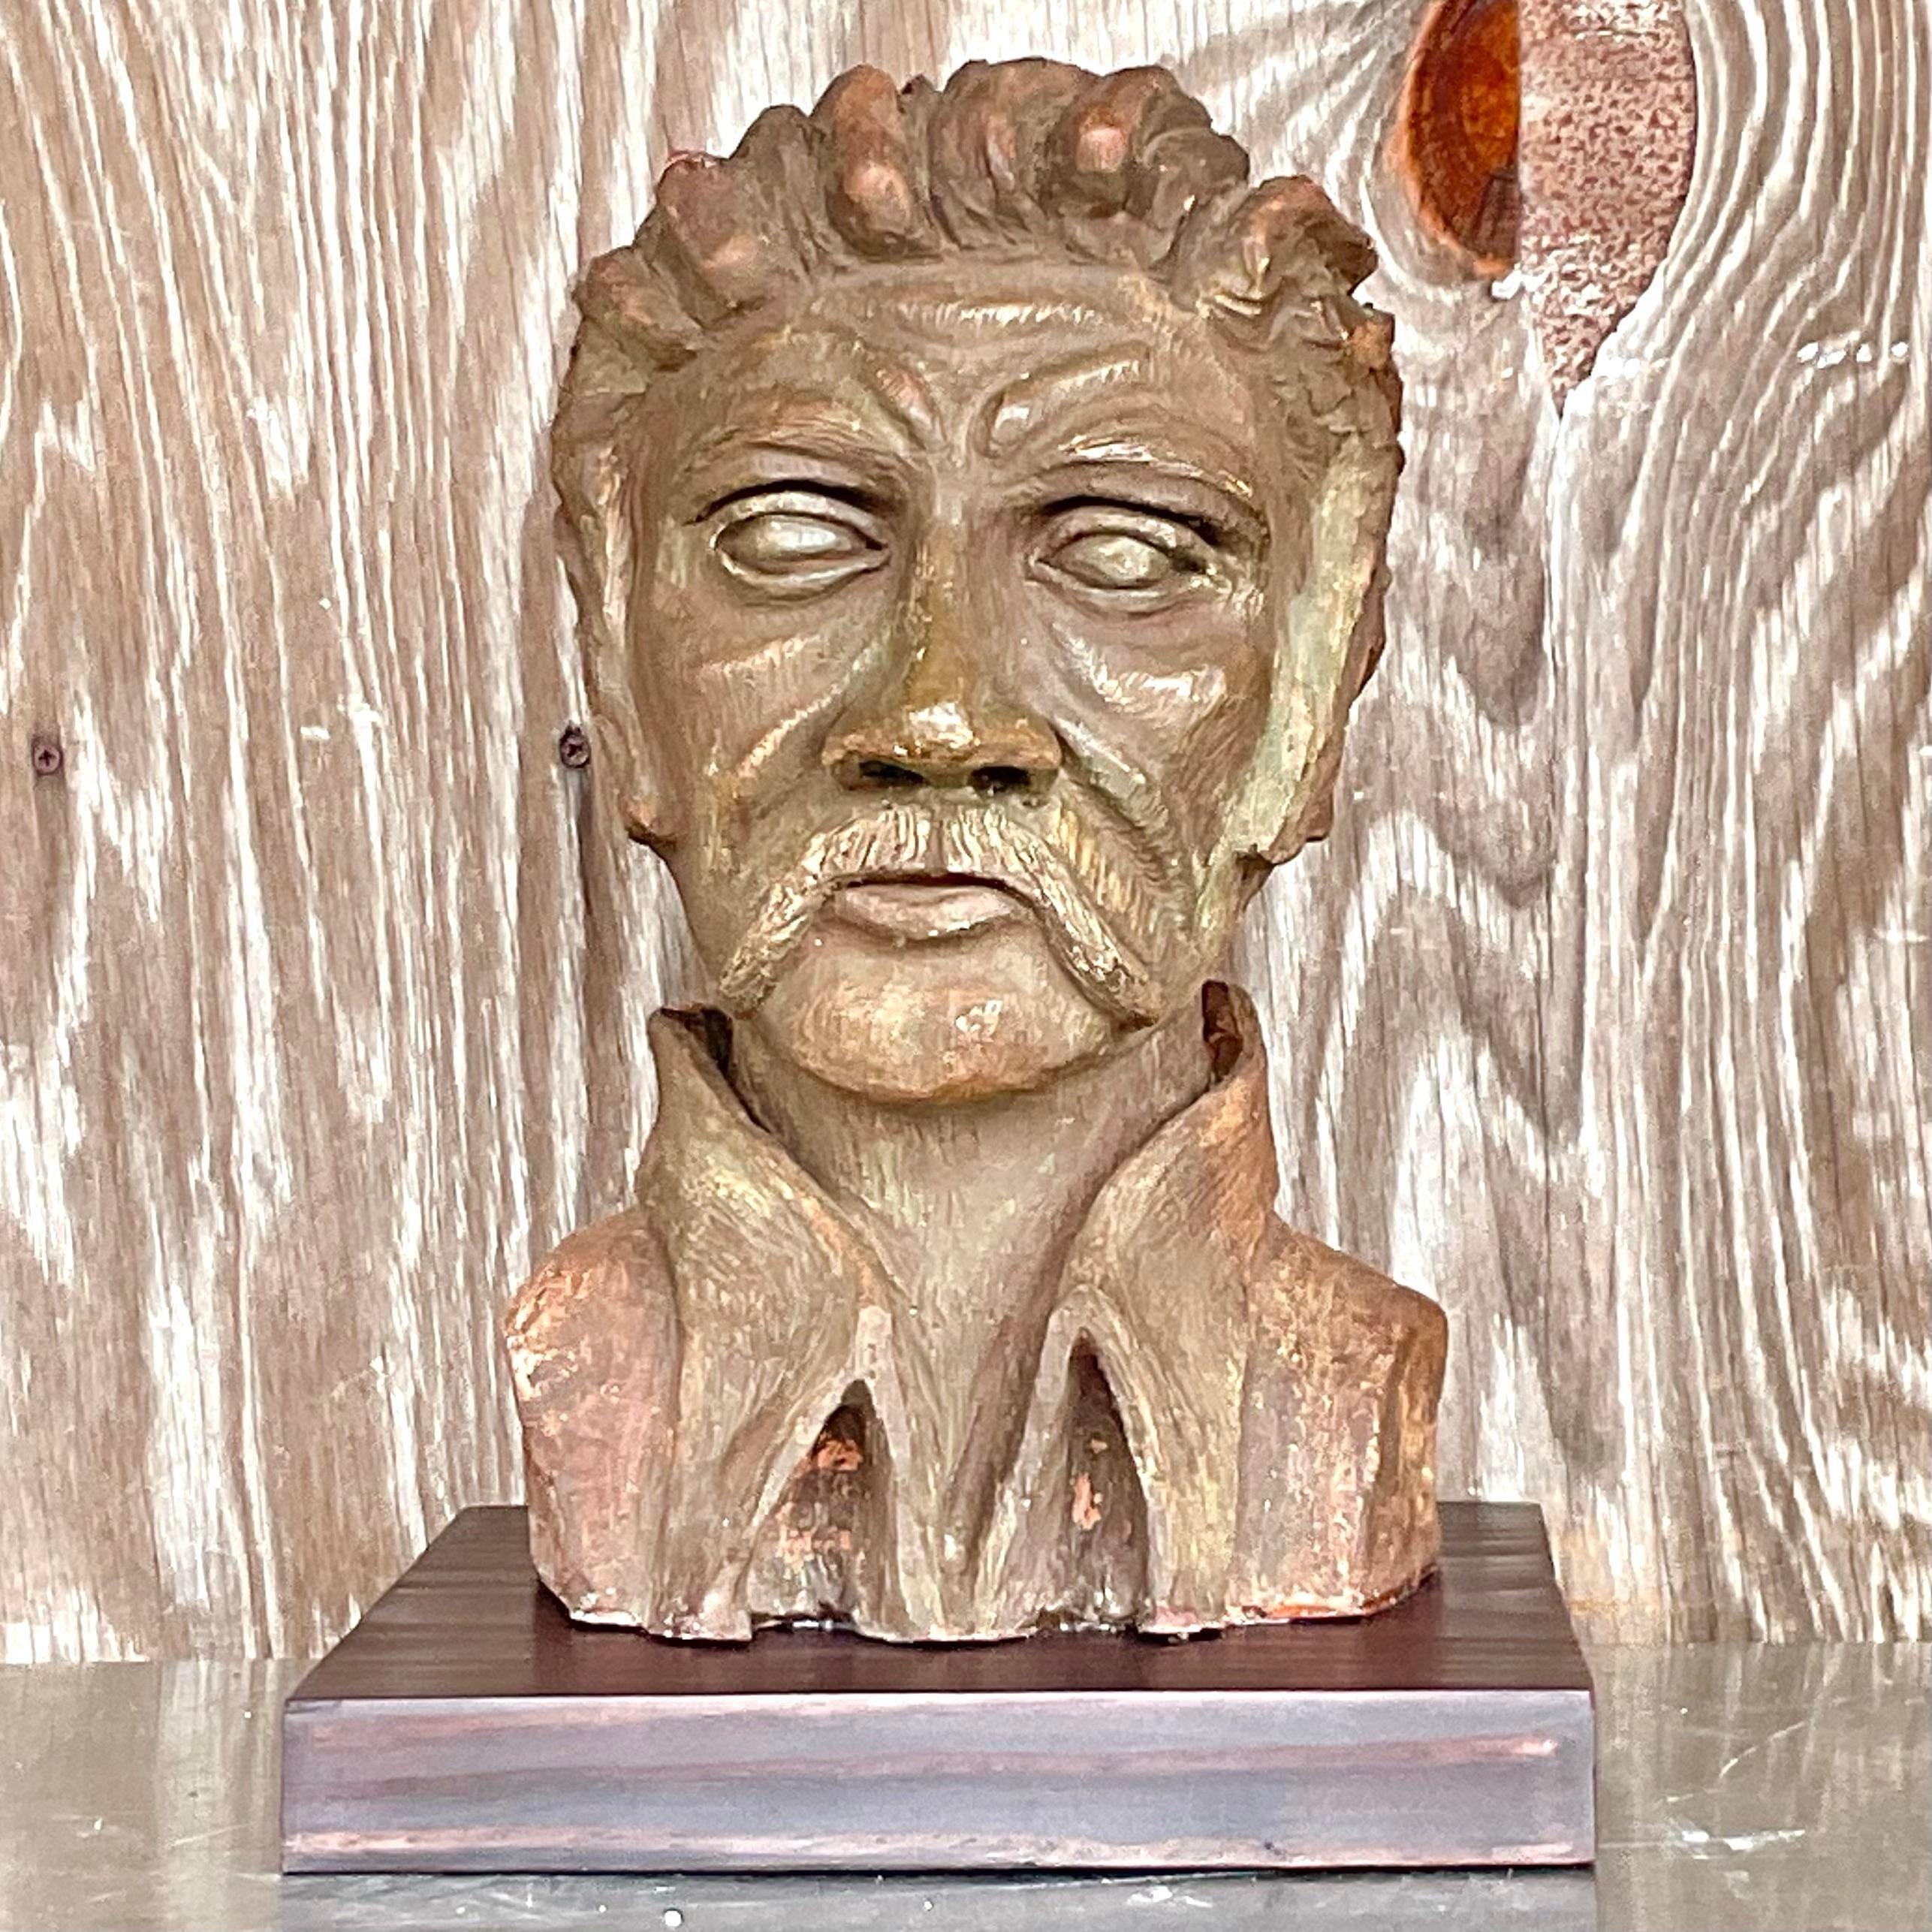 Embrassez l'héritage artistique de l'artisanat américain avec ce buste d'homme en argile sculpté Vintage By. Avec ses détails complexes et son charme bohème, cette pièce capture l'essence même de la créativité et du patrimoine. Ajoutez une touche